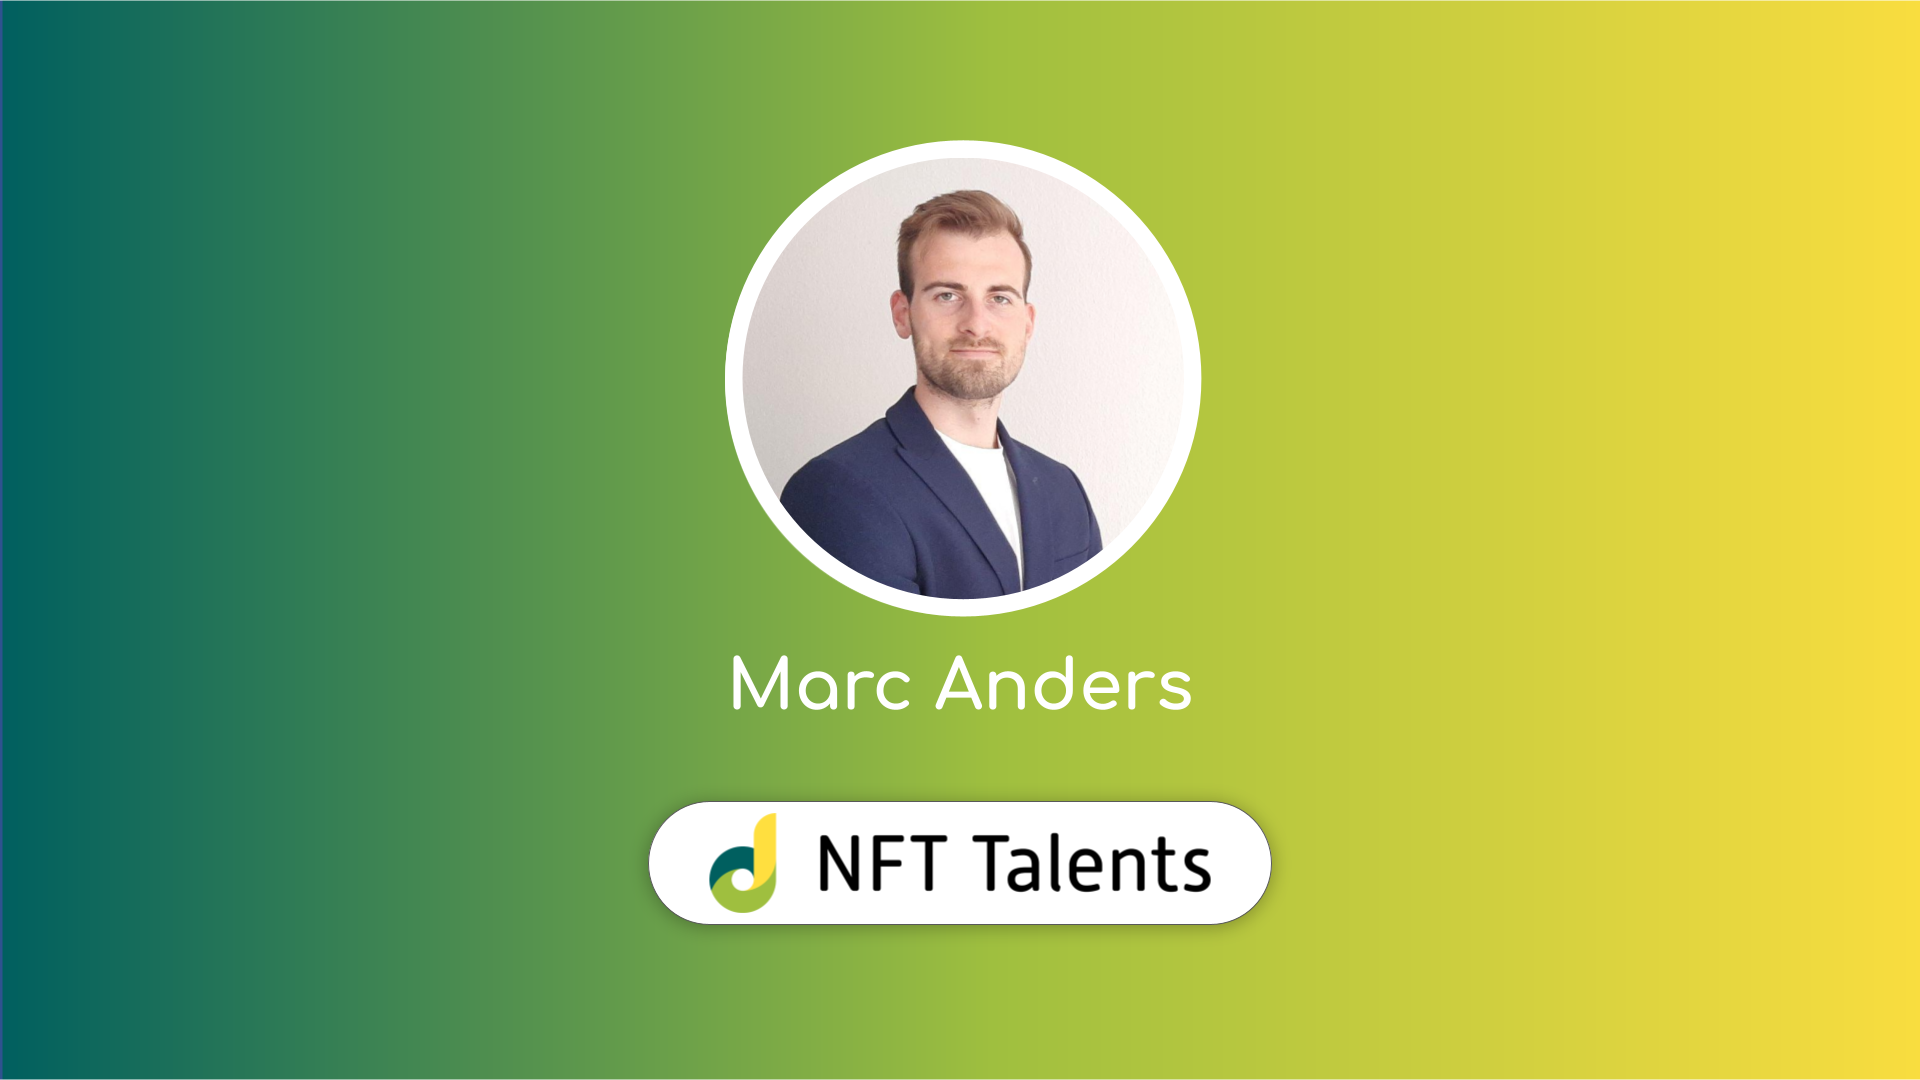 NFT Talents Mentor – Marc Anders